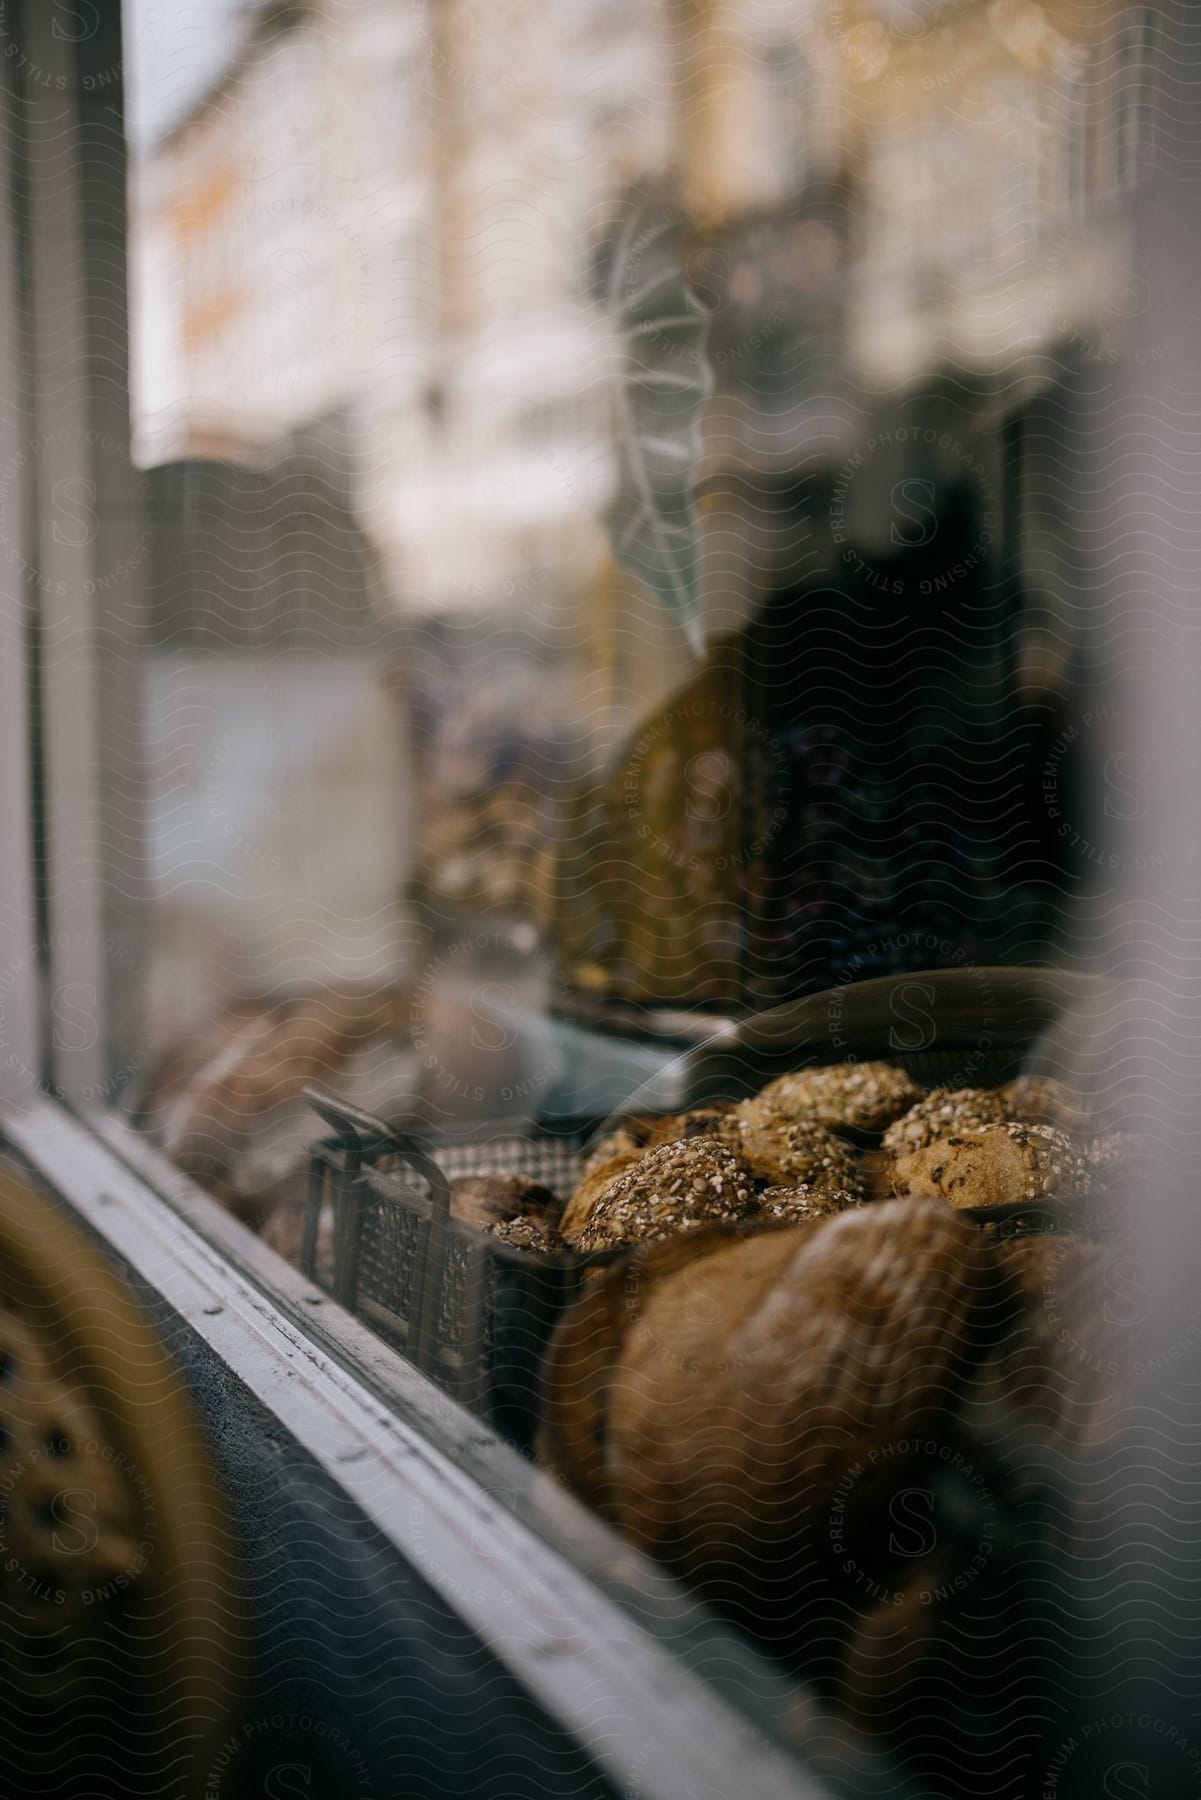 Bread in Bakery Window.